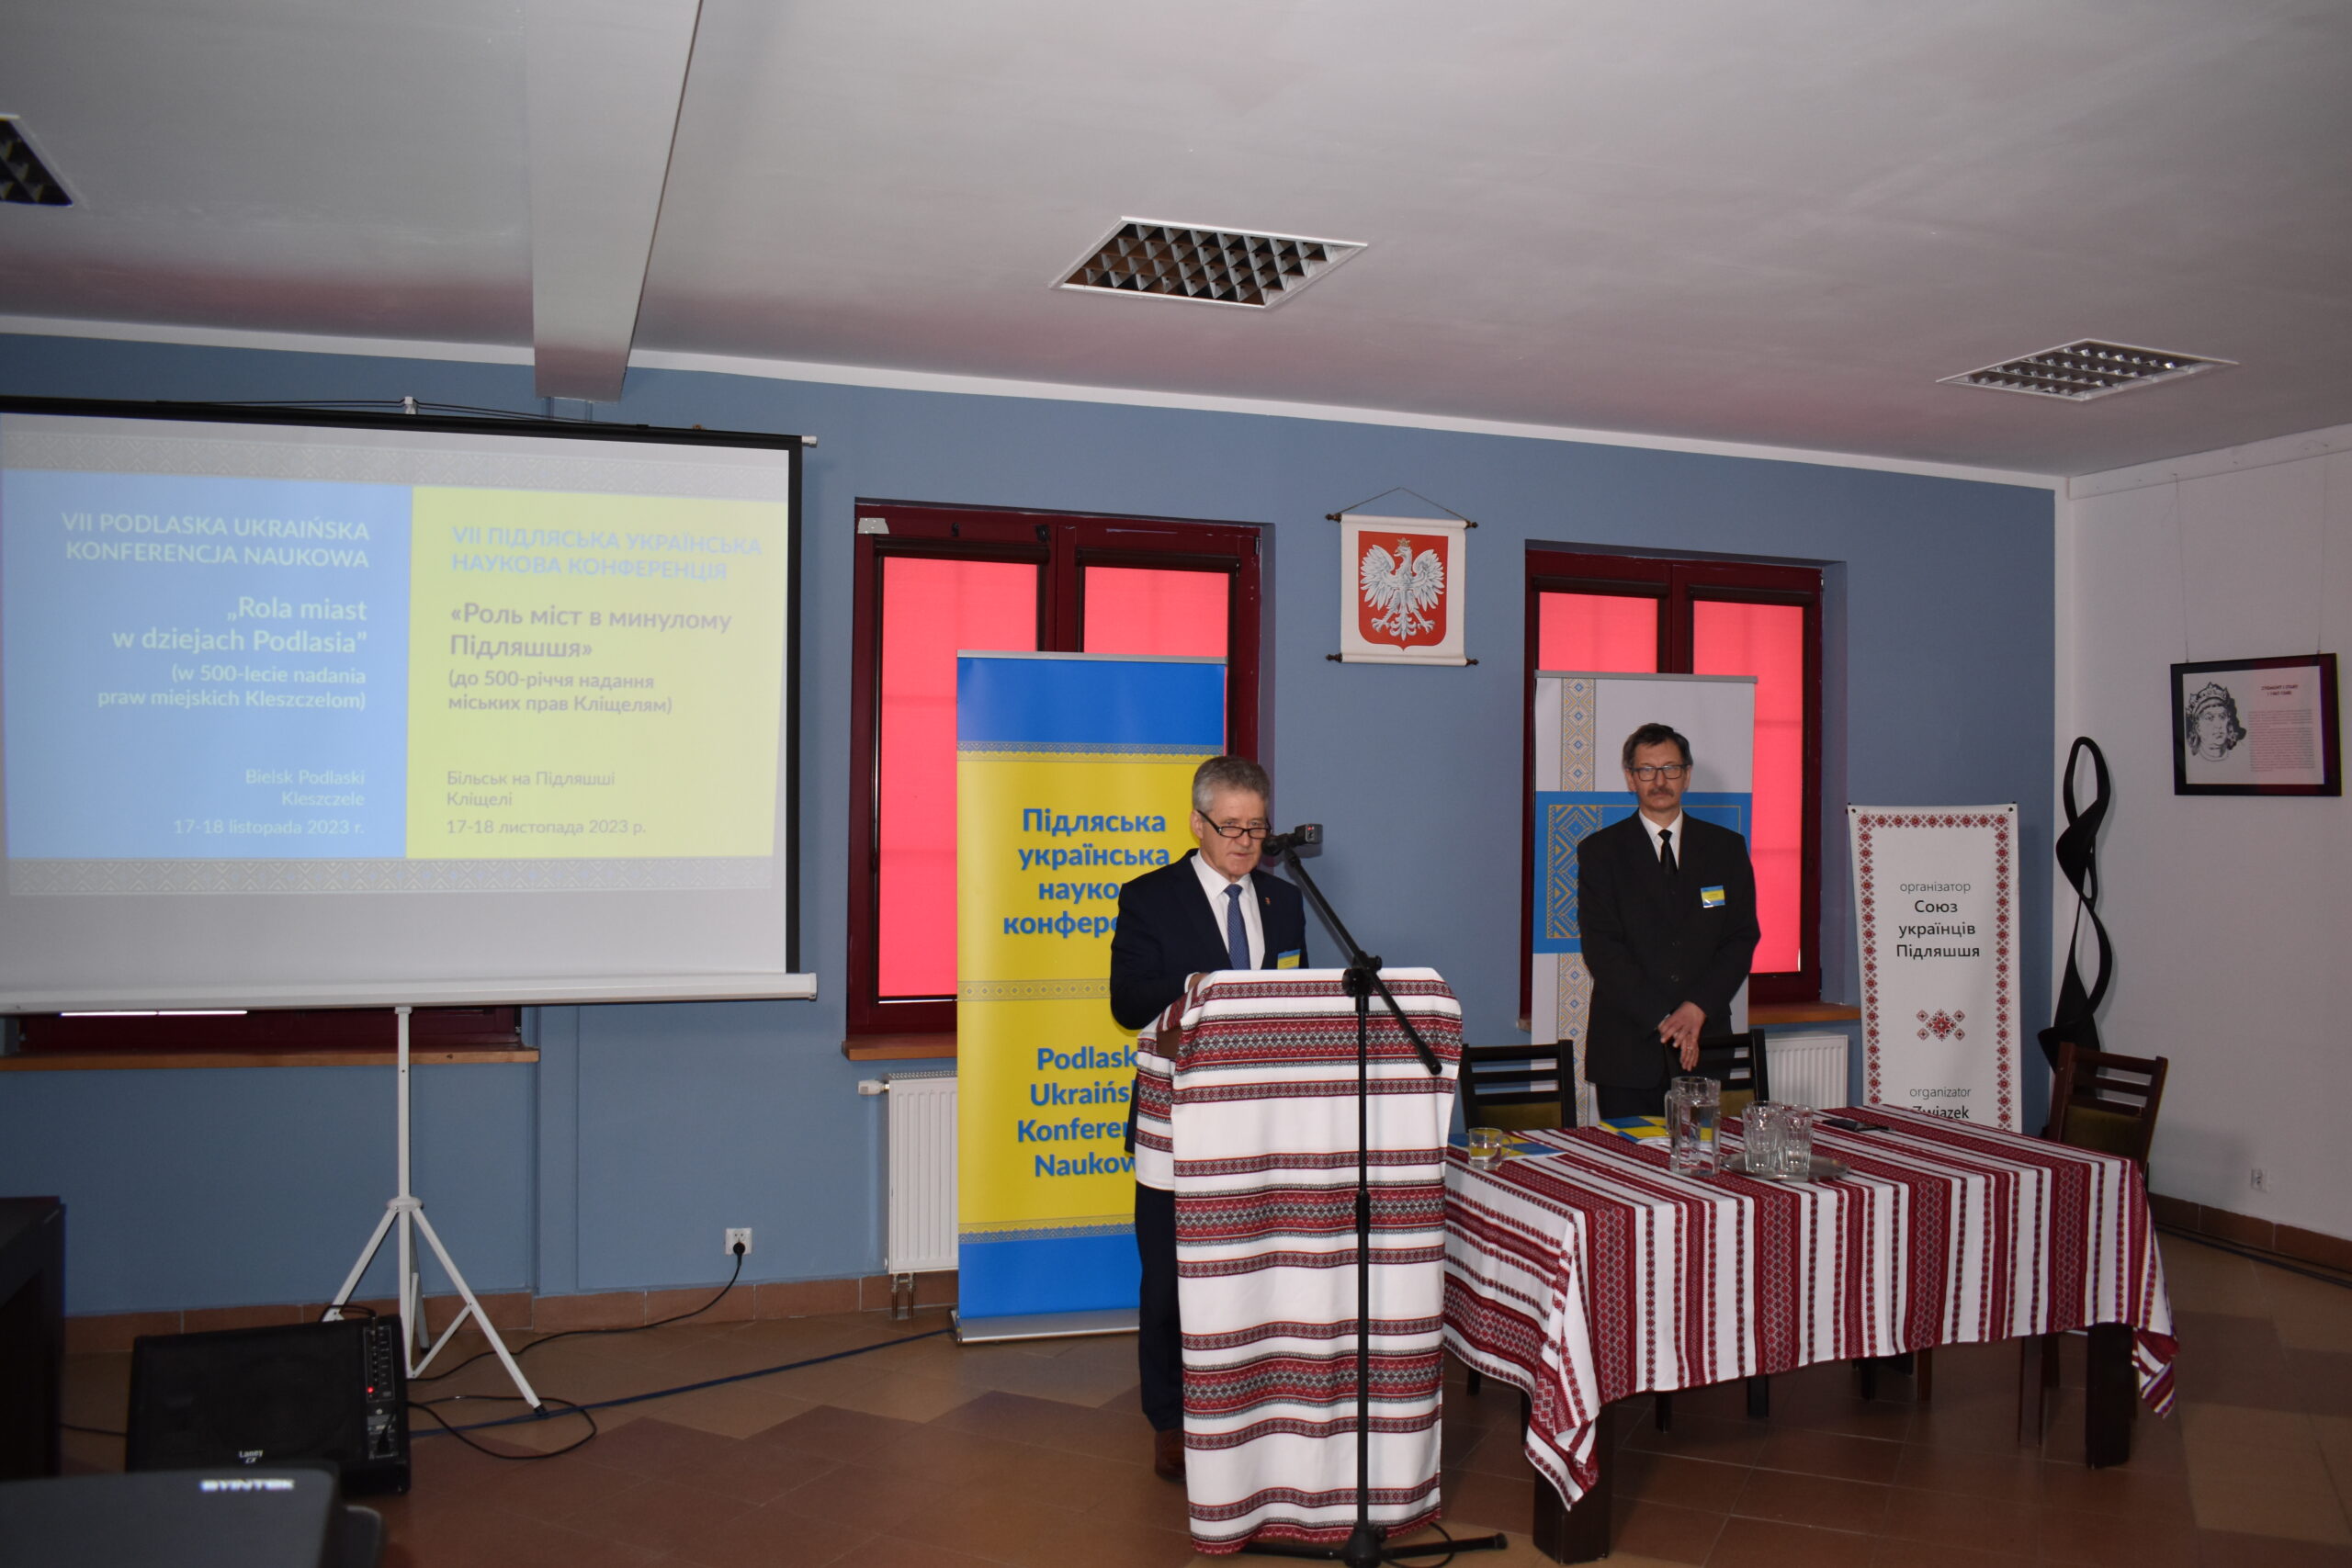 Odbyła się VII Podlaska Ukraińska Konferencja Naukowa „Rola miast w dziejach Podlasia”